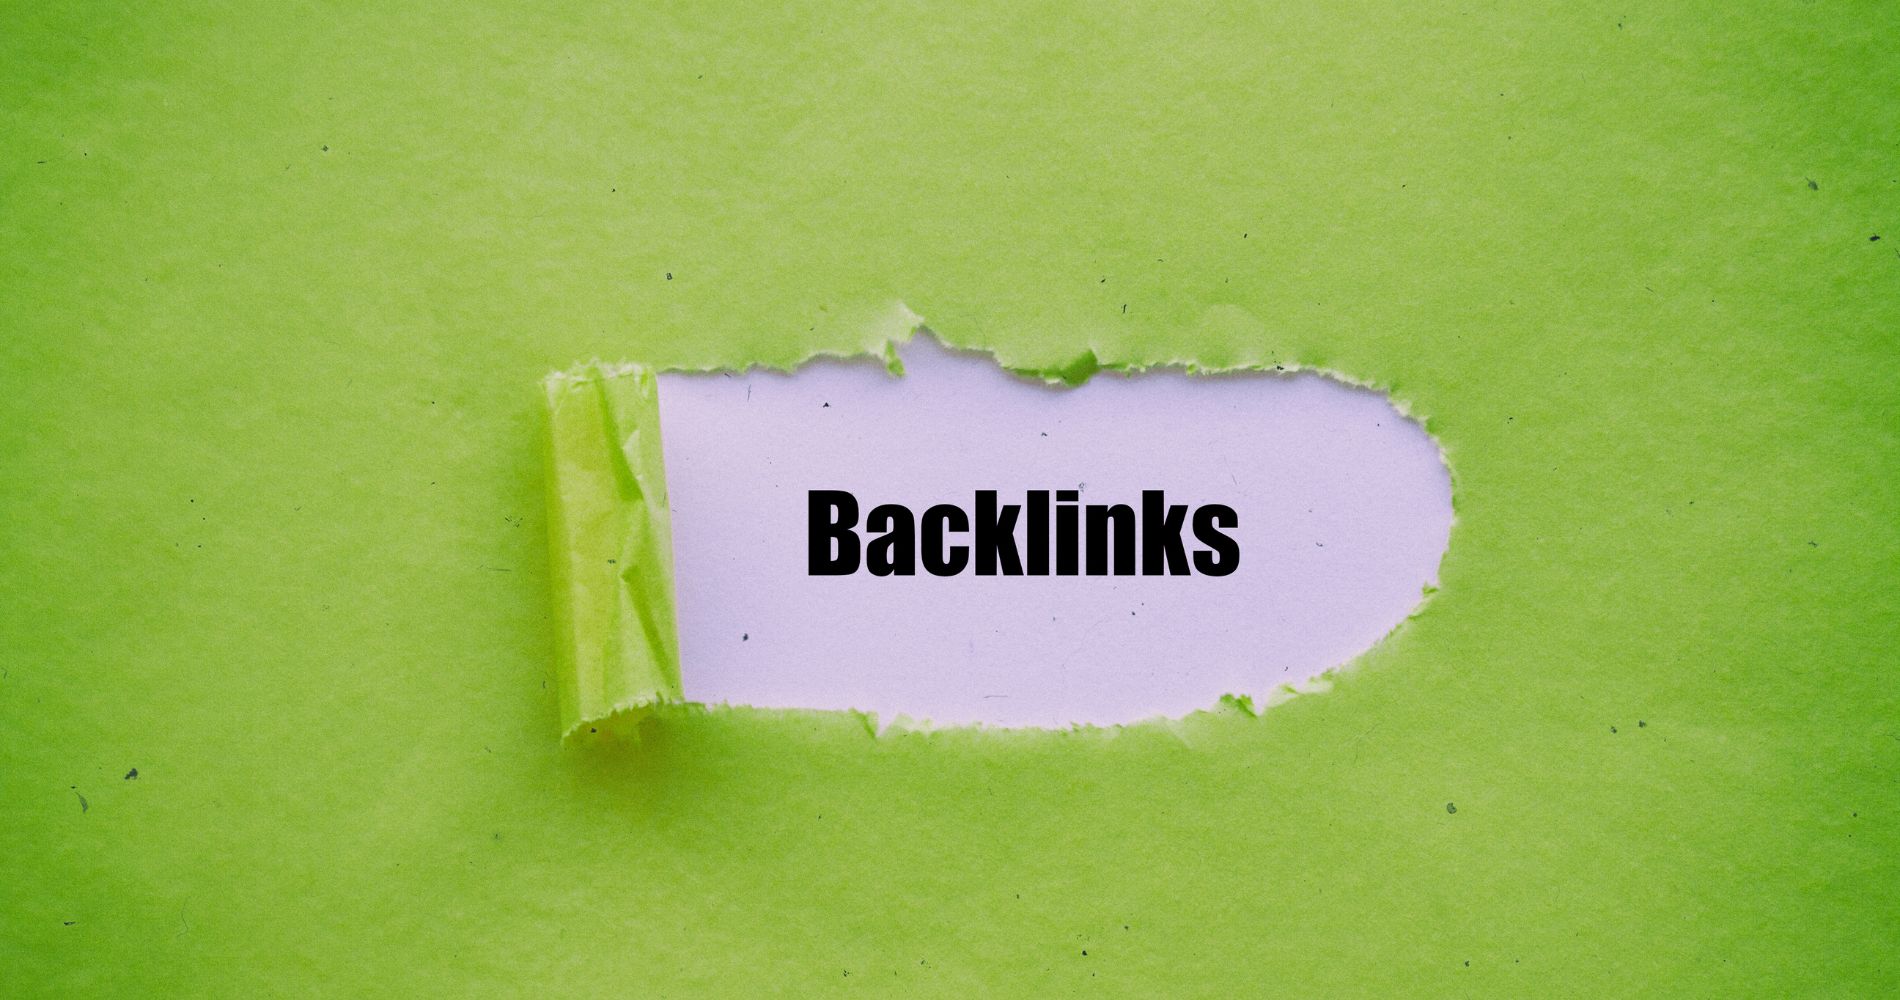 Querverweise, auch Backlinks genannt, sorgen für eine gute Bewertung deiner Website, sofern diese hochwertig sind